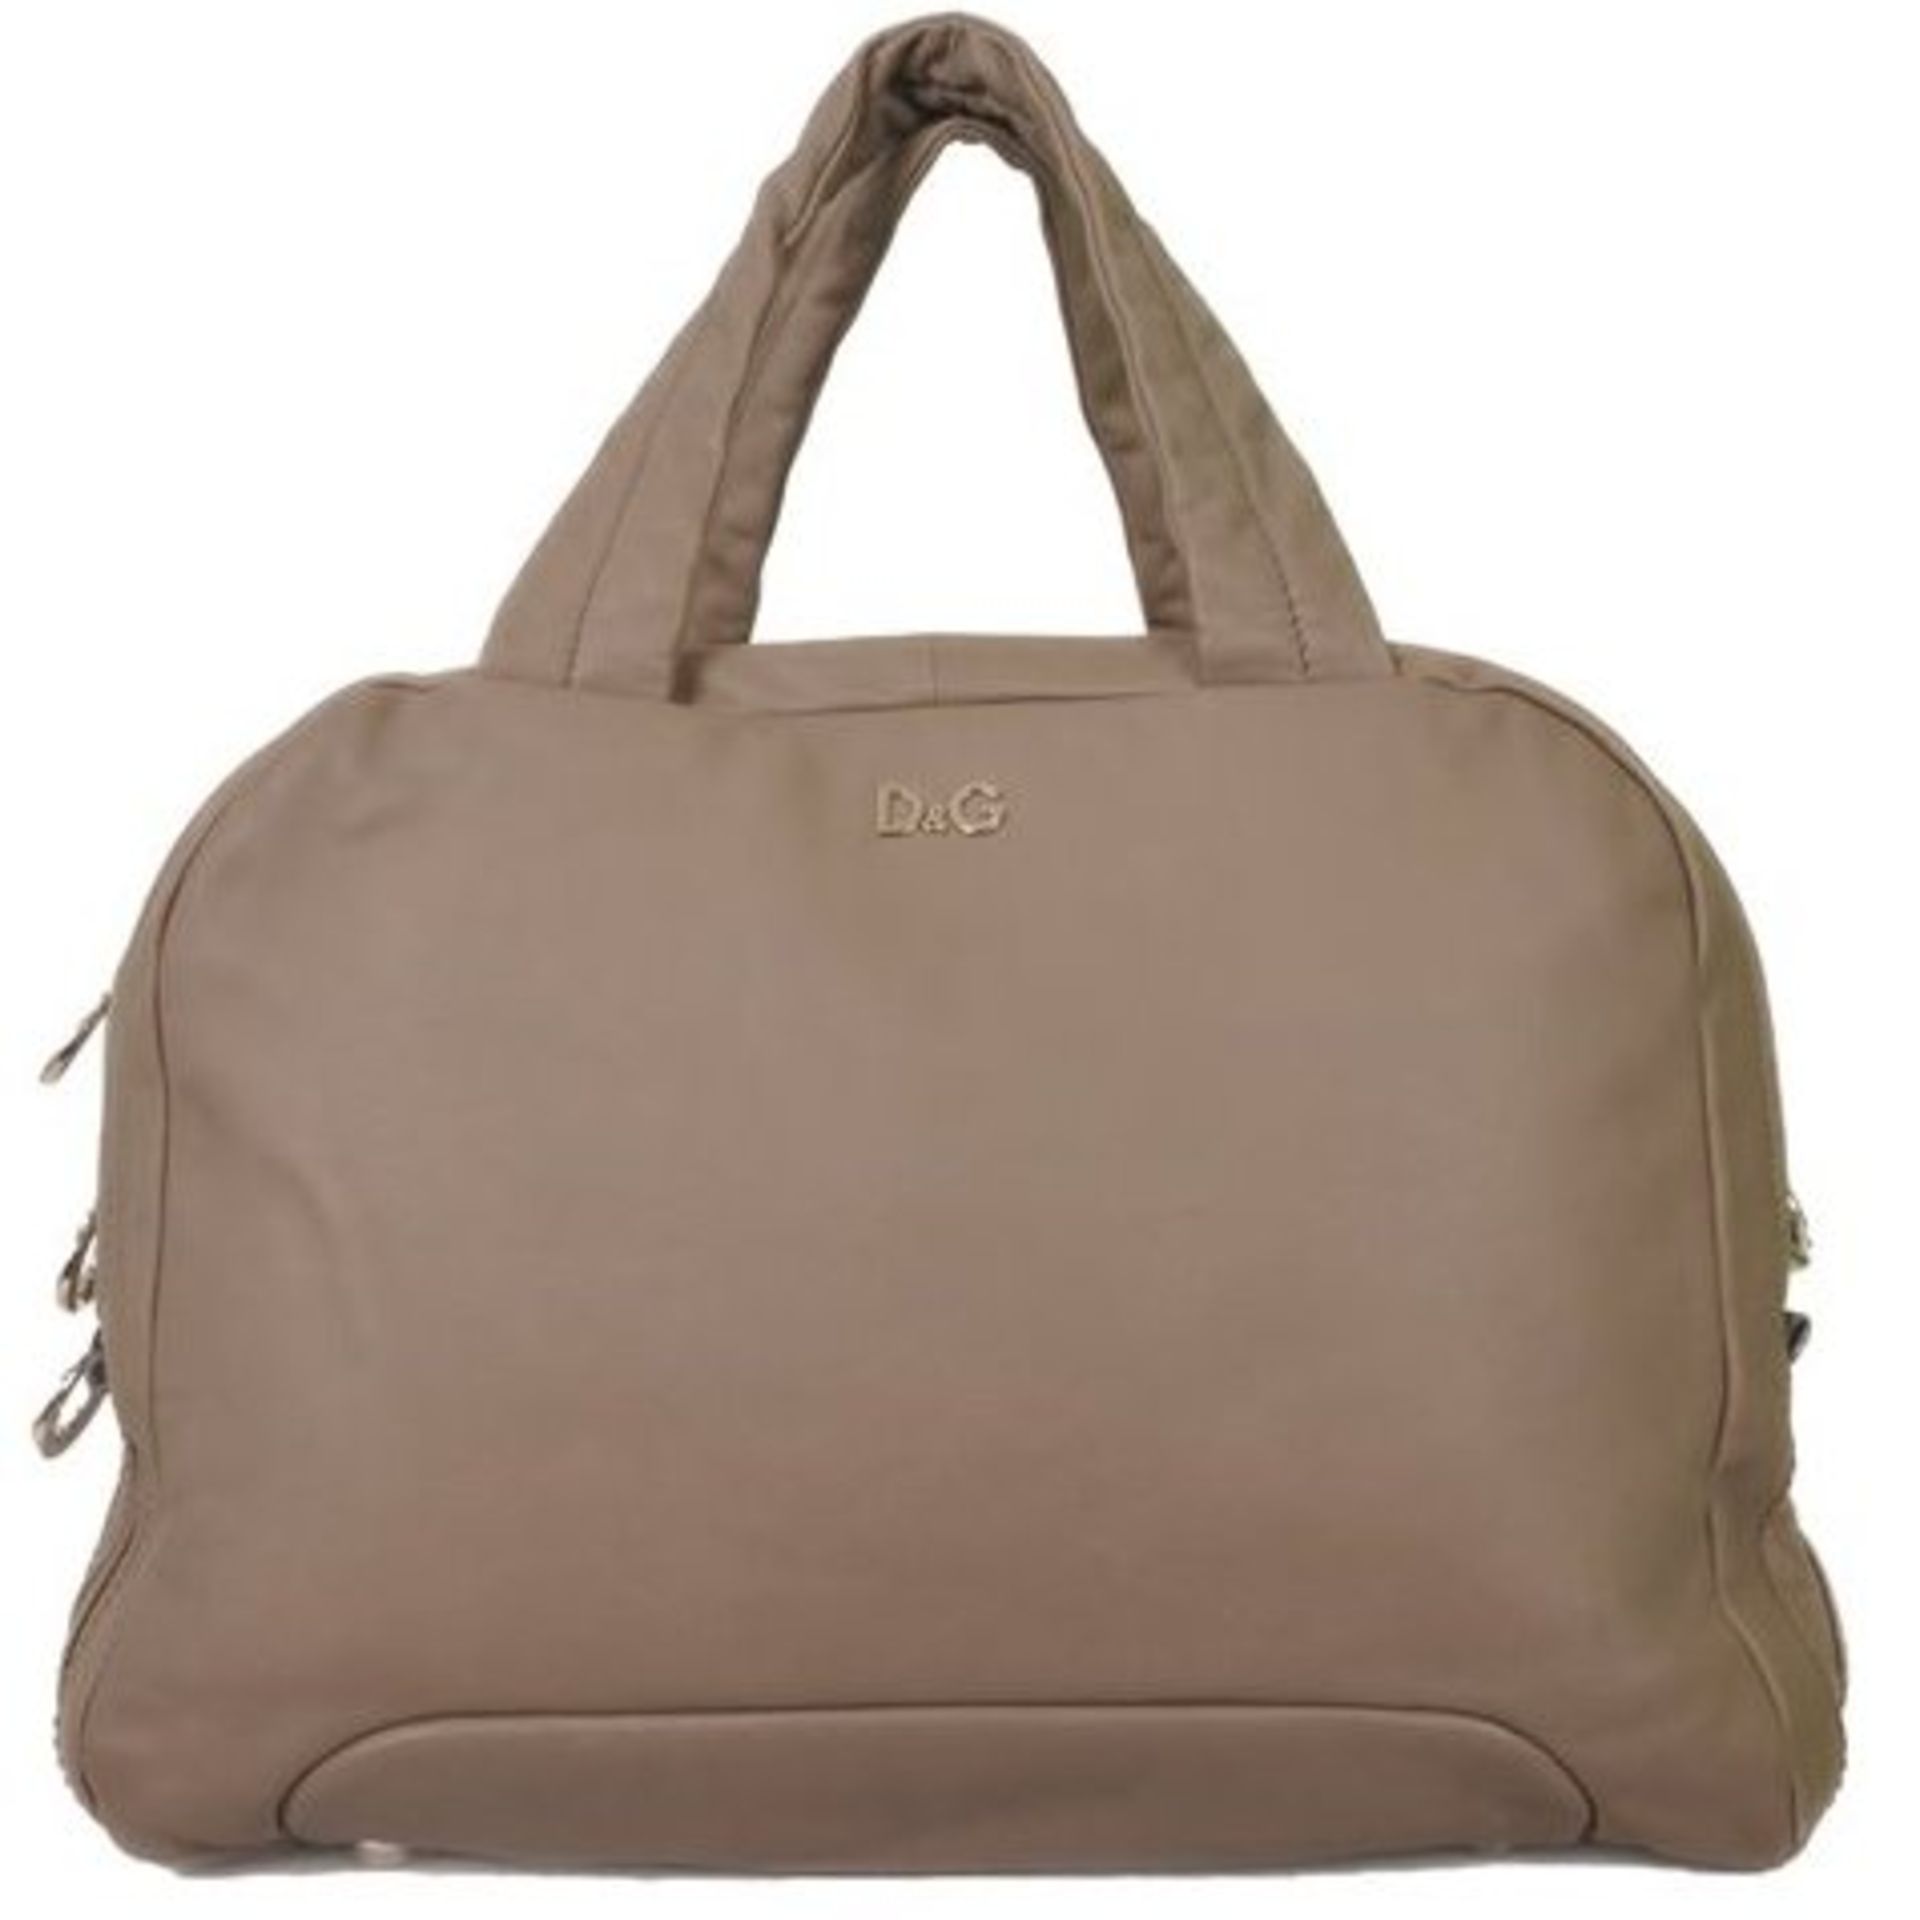 Dolce & Gabbana Lily Soft Leather Shoulder Bag